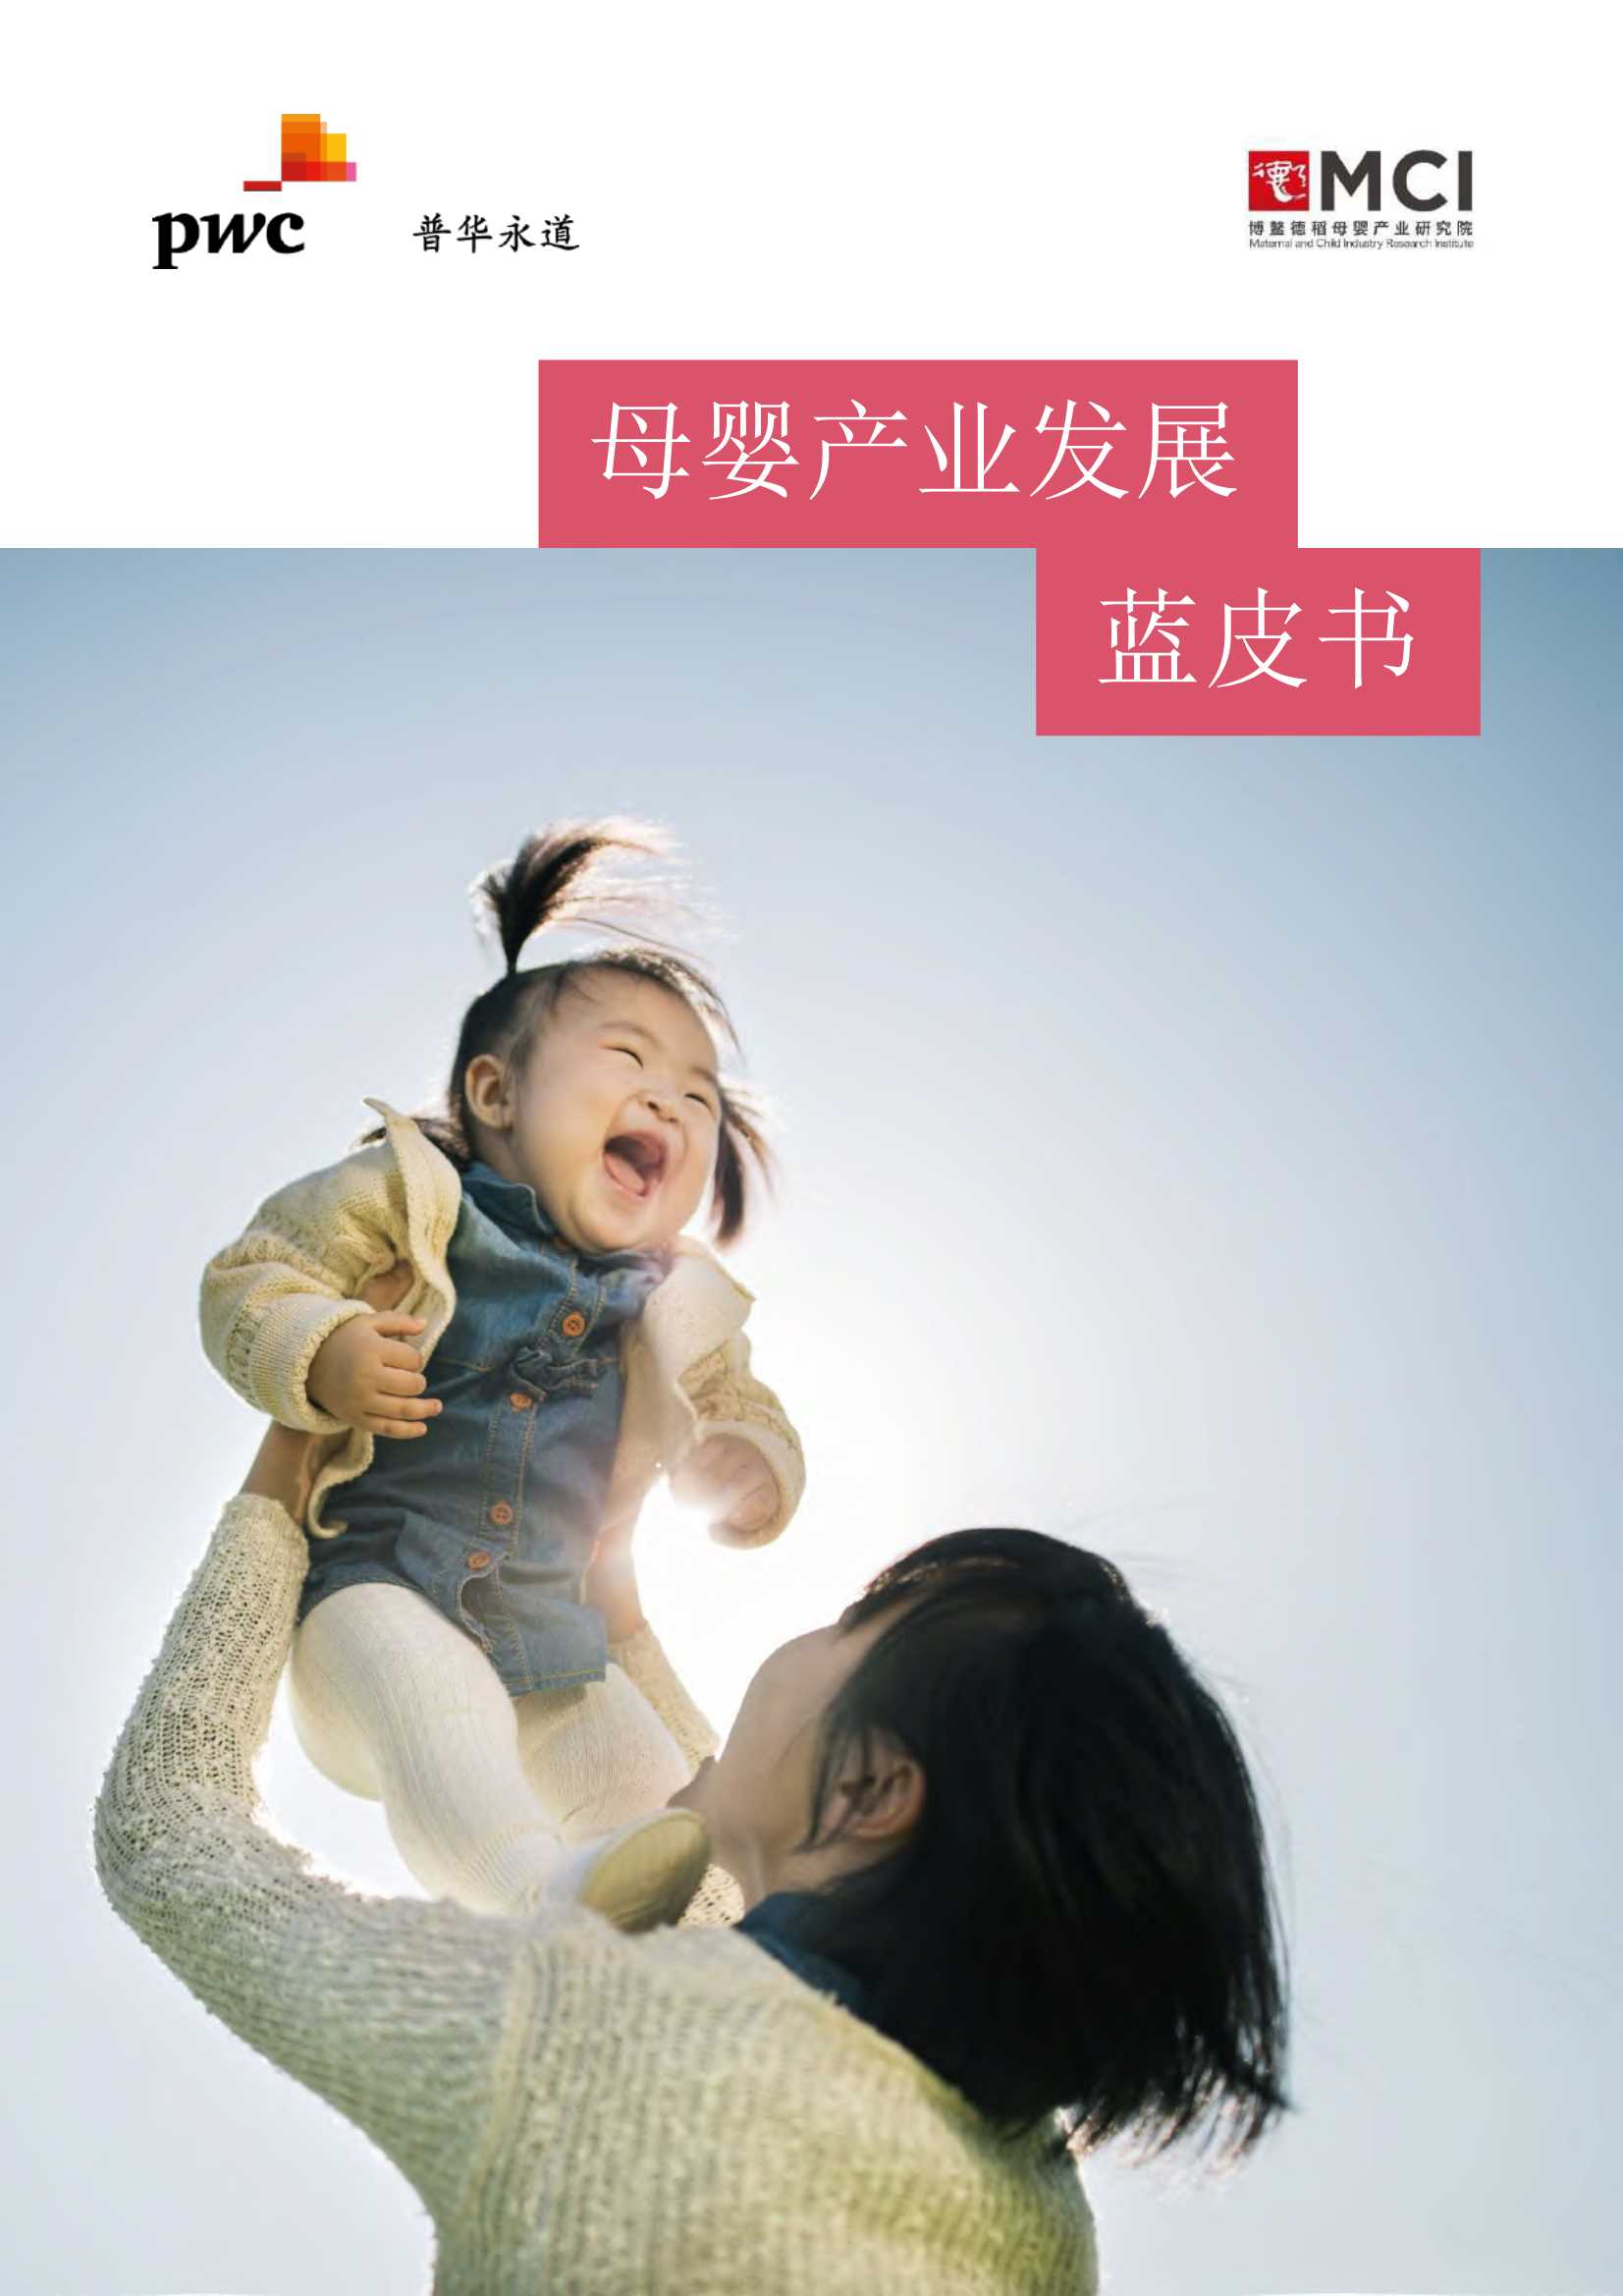 普华永道-母婴产业发展蓝皮书-2021.10-32页